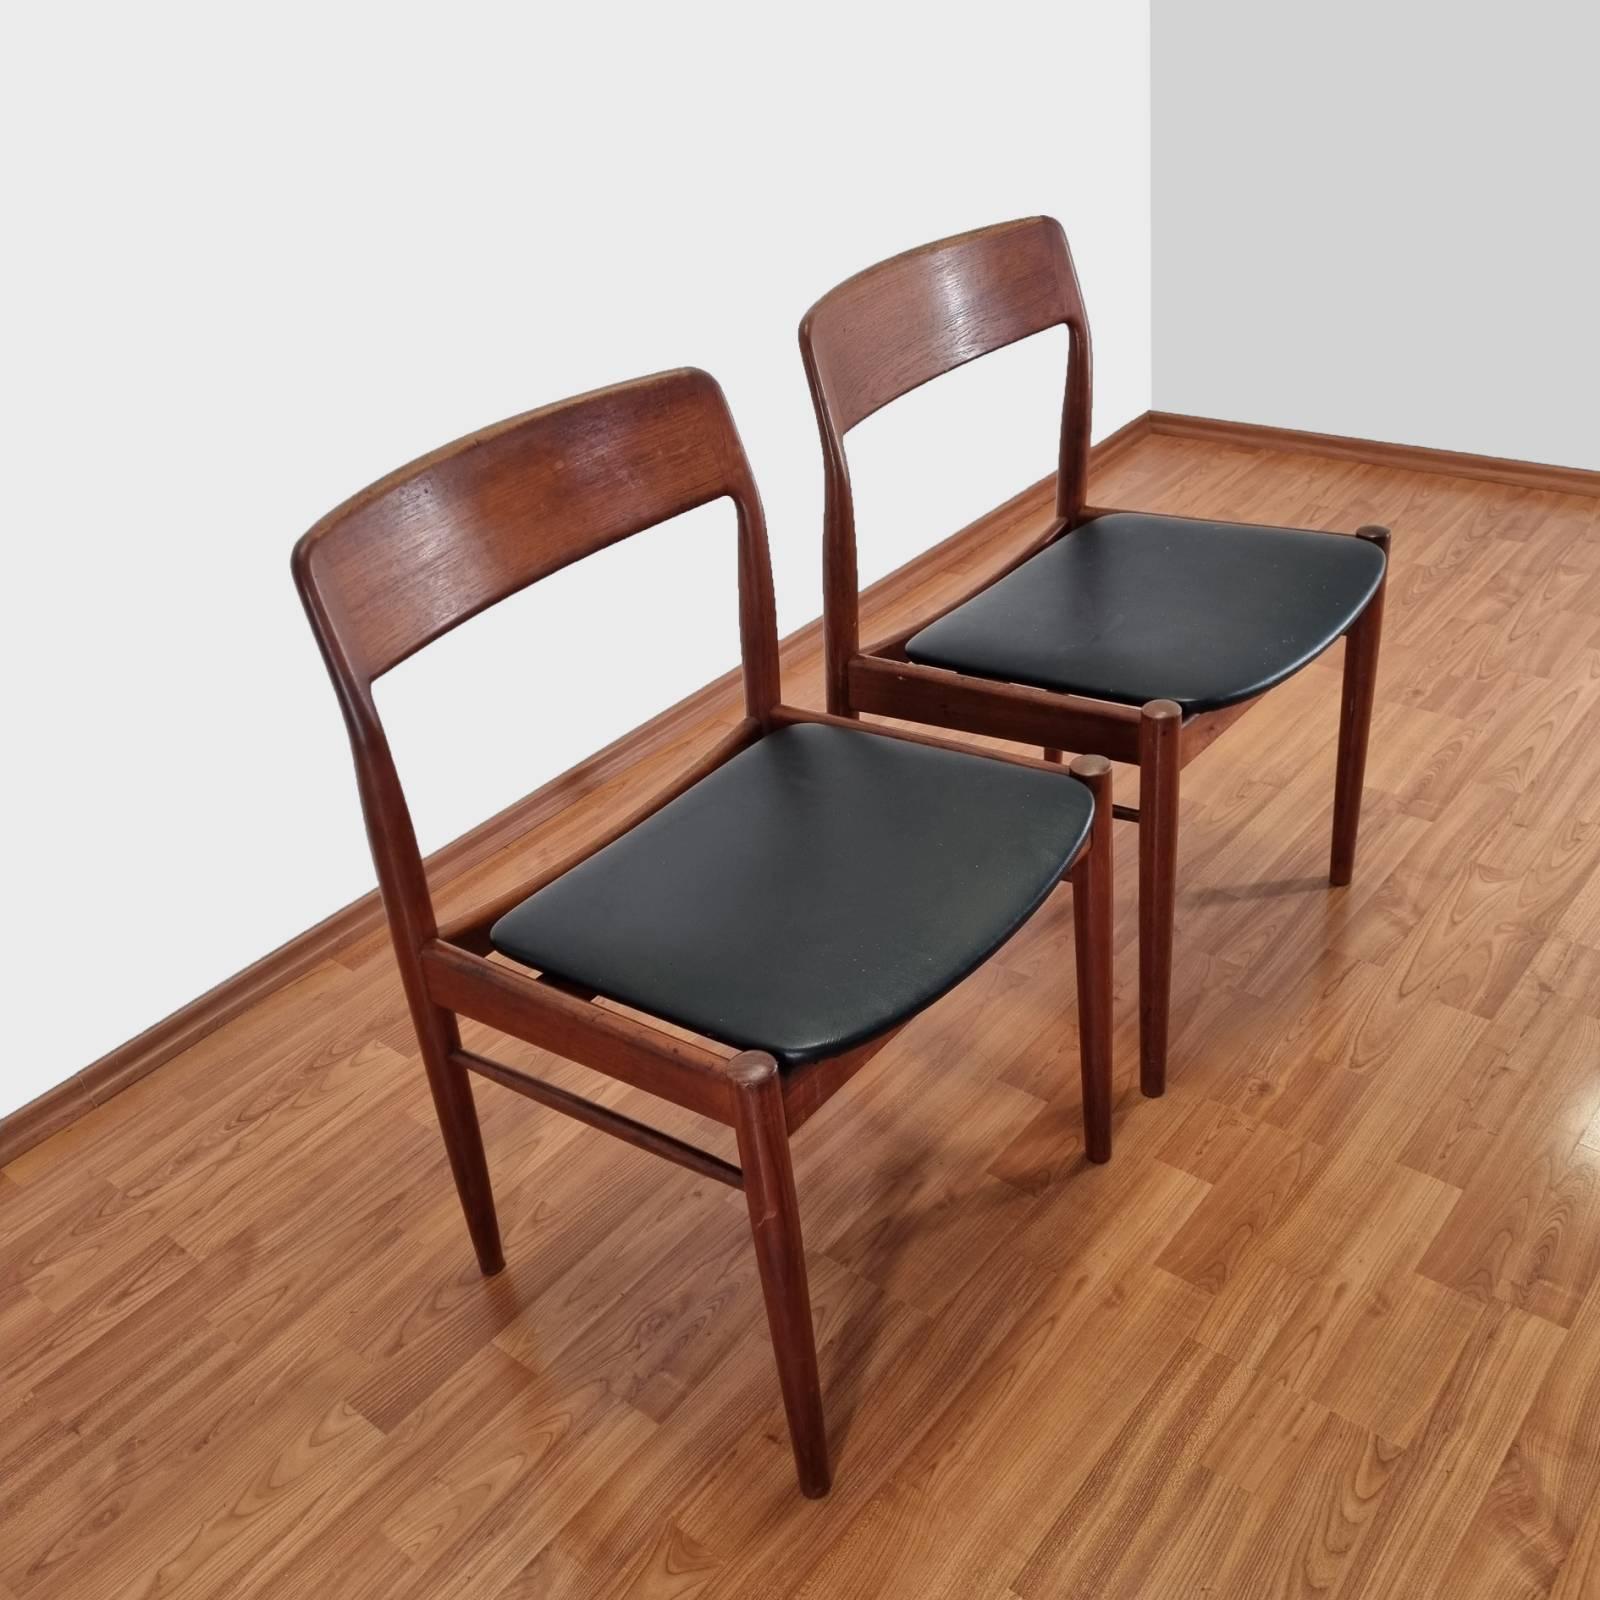 Ein Paar Esszimmerstühle aus Teakholz, entworfen von Niels Otto Möller, hergestellt in Dänemark in den 60er Jahren.
In sehr gutem Vintage-Zustand mit geringen Gebrauchs- und Altersspuren.
